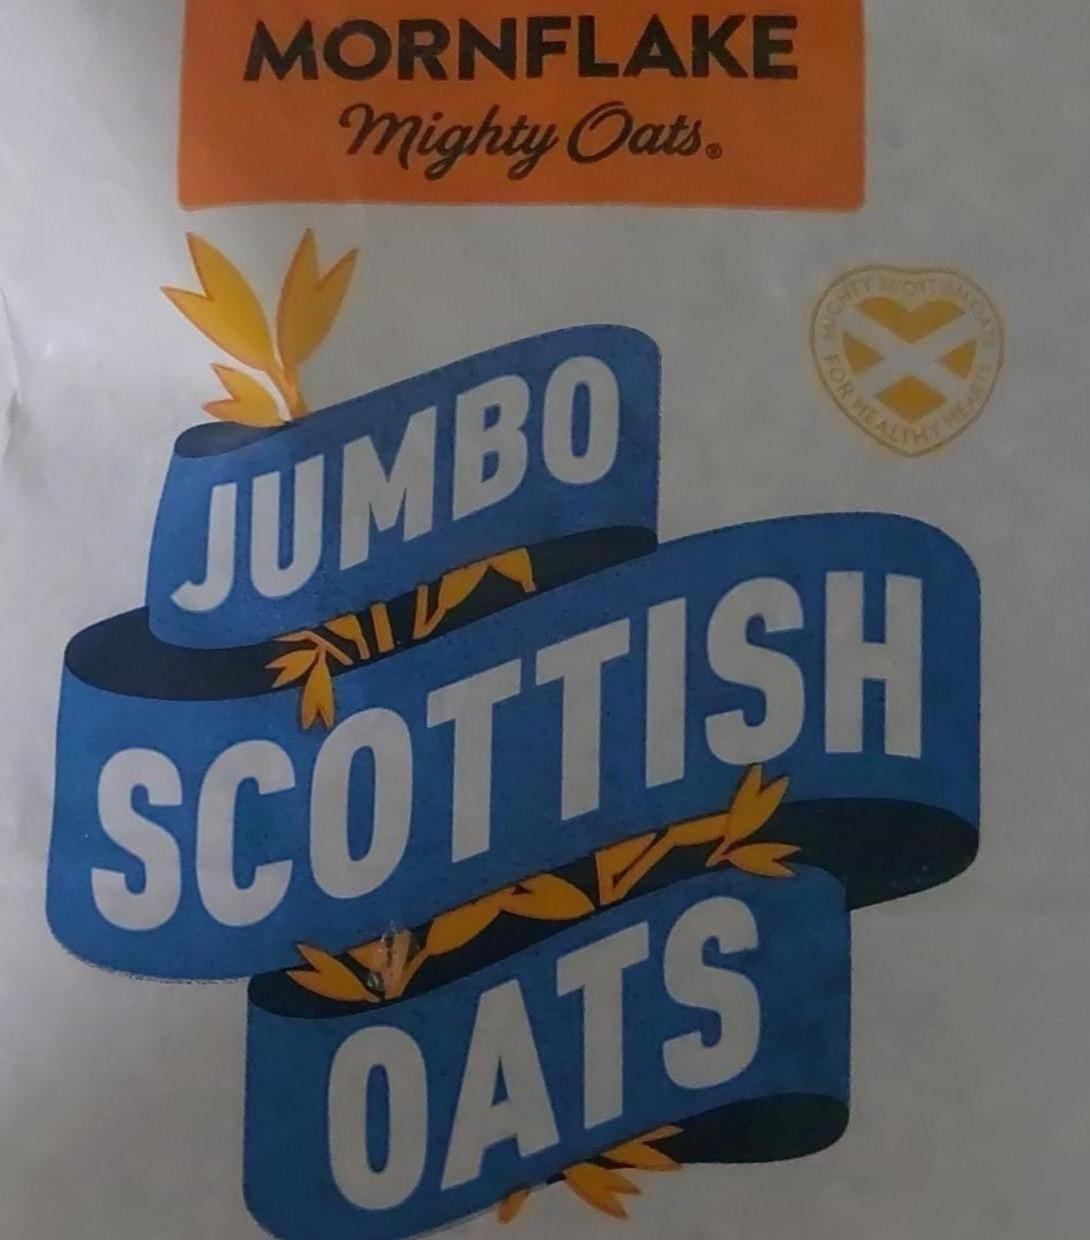 Фото - Jumbo Scottish oats mighty oats Mornflake